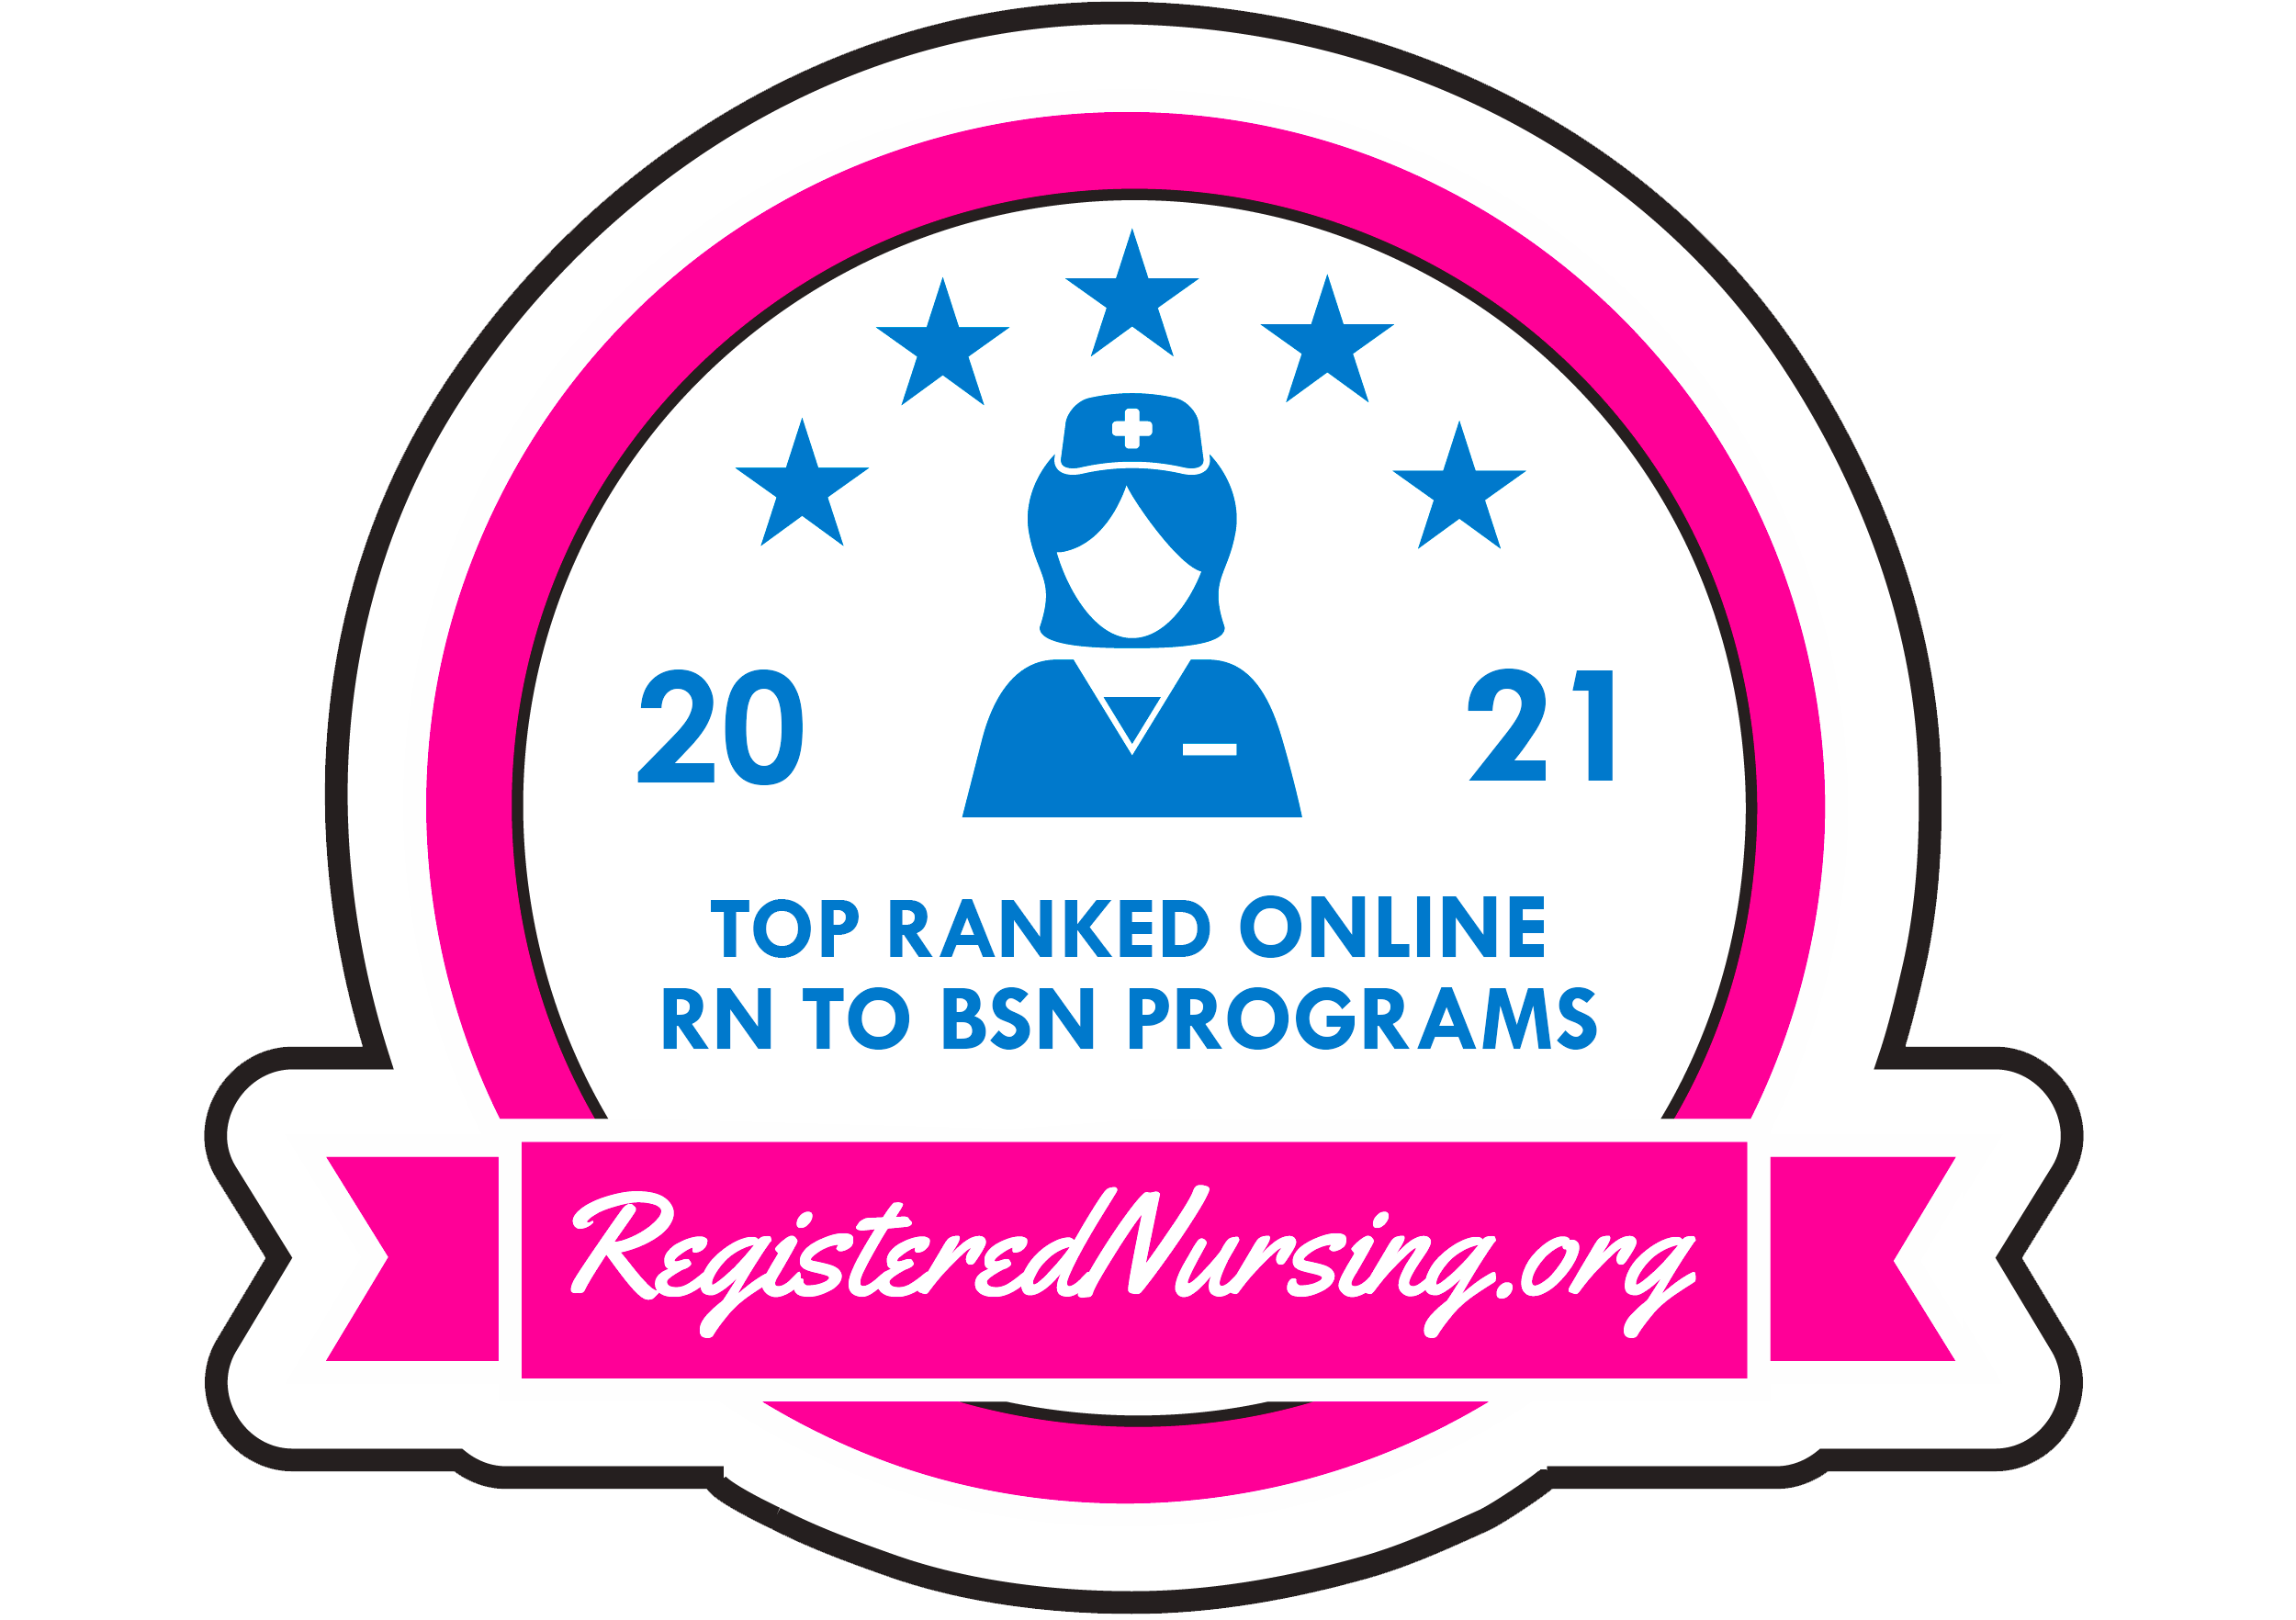 SMSU Online Nursing Program Named  Most Affordable in Minnesota